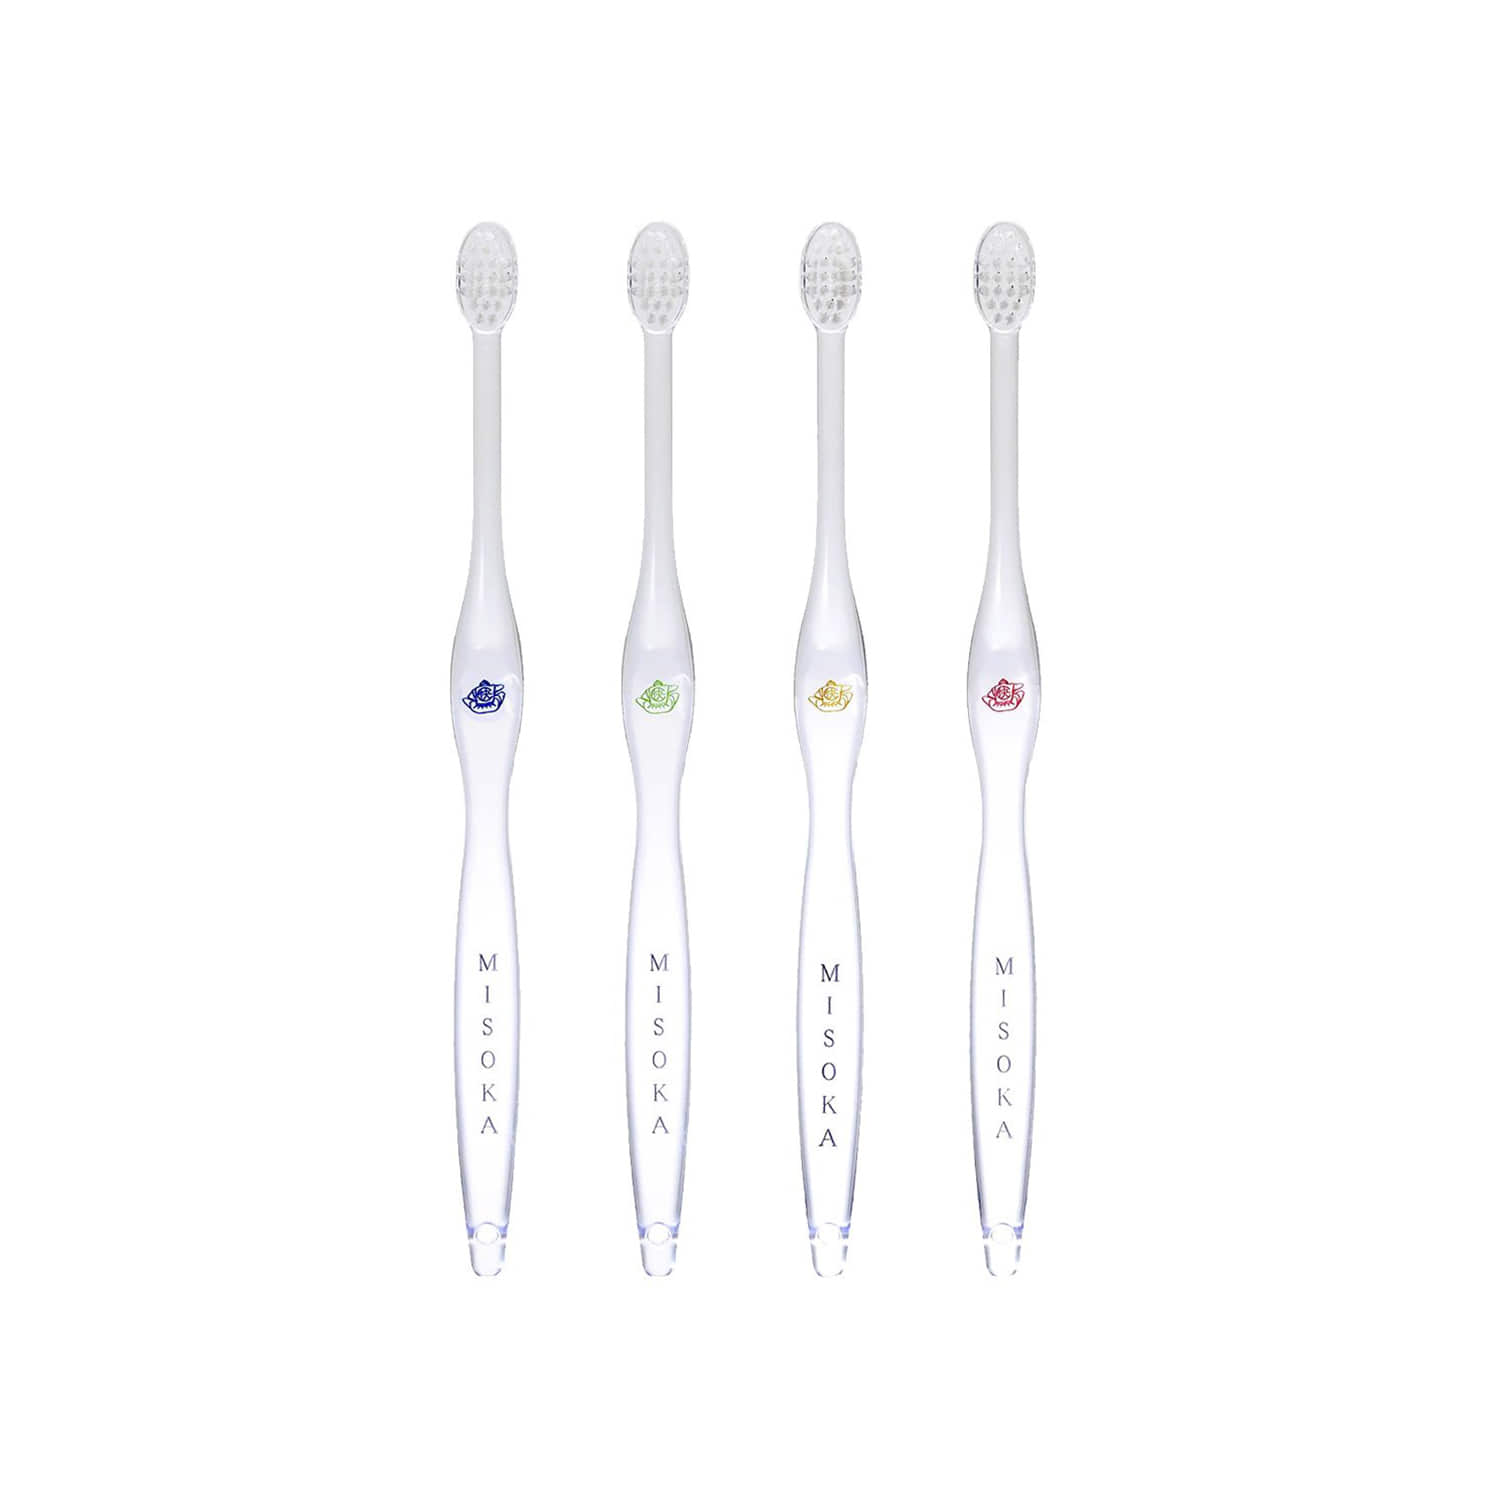 Original toothbrush, 4colors